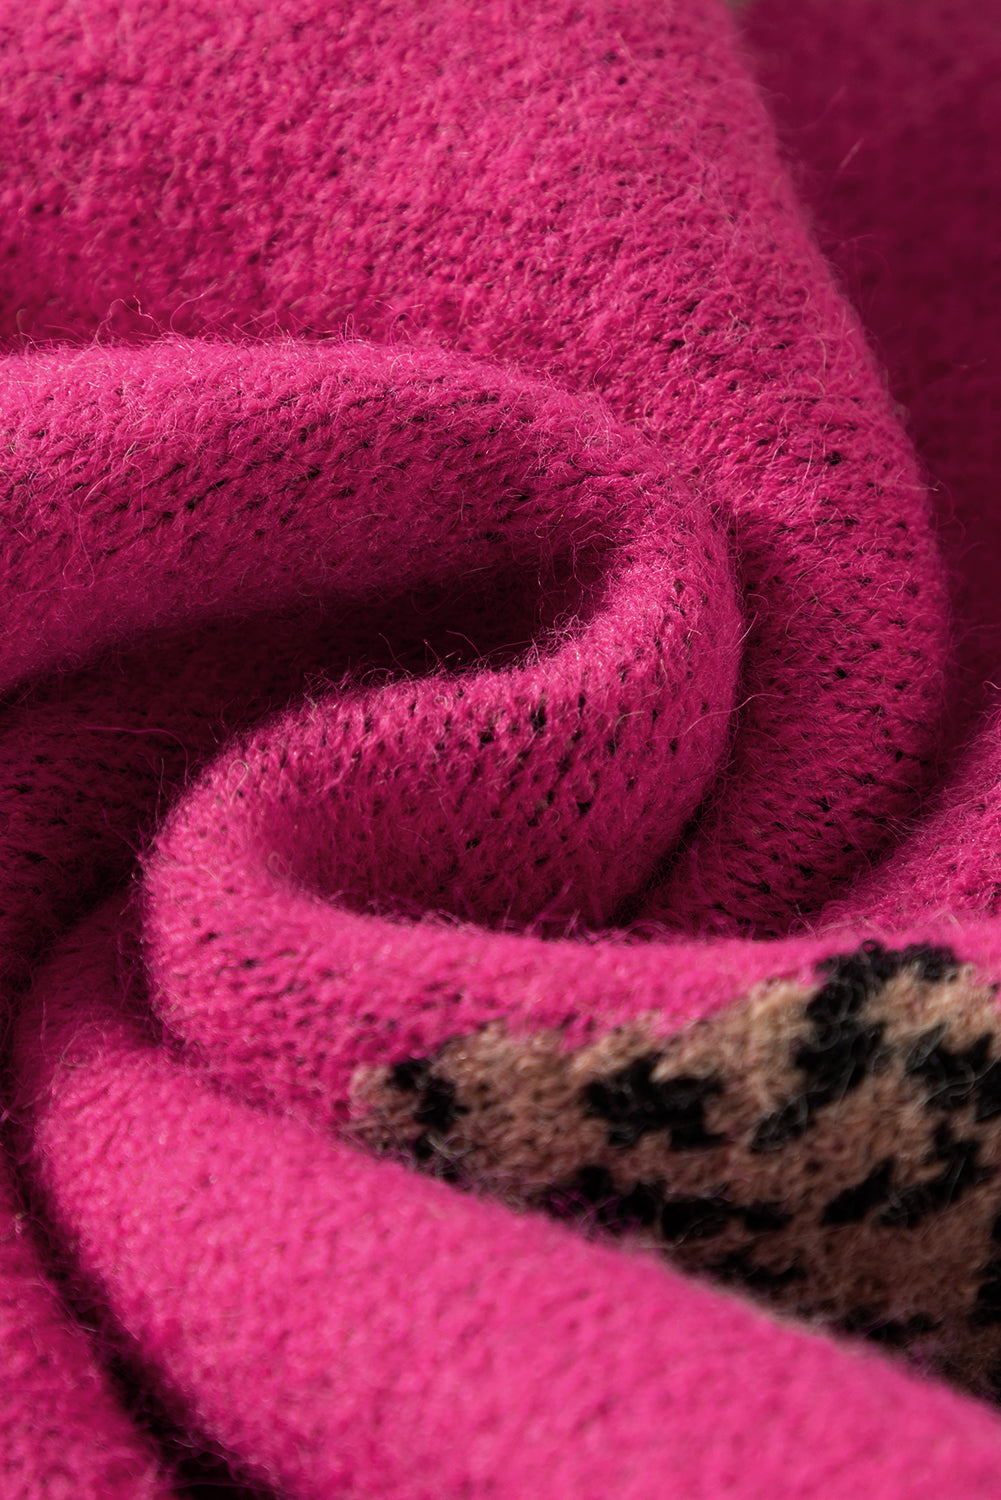 Ležeren pleten pulover z rožnato rdečim živalskim vzorcem